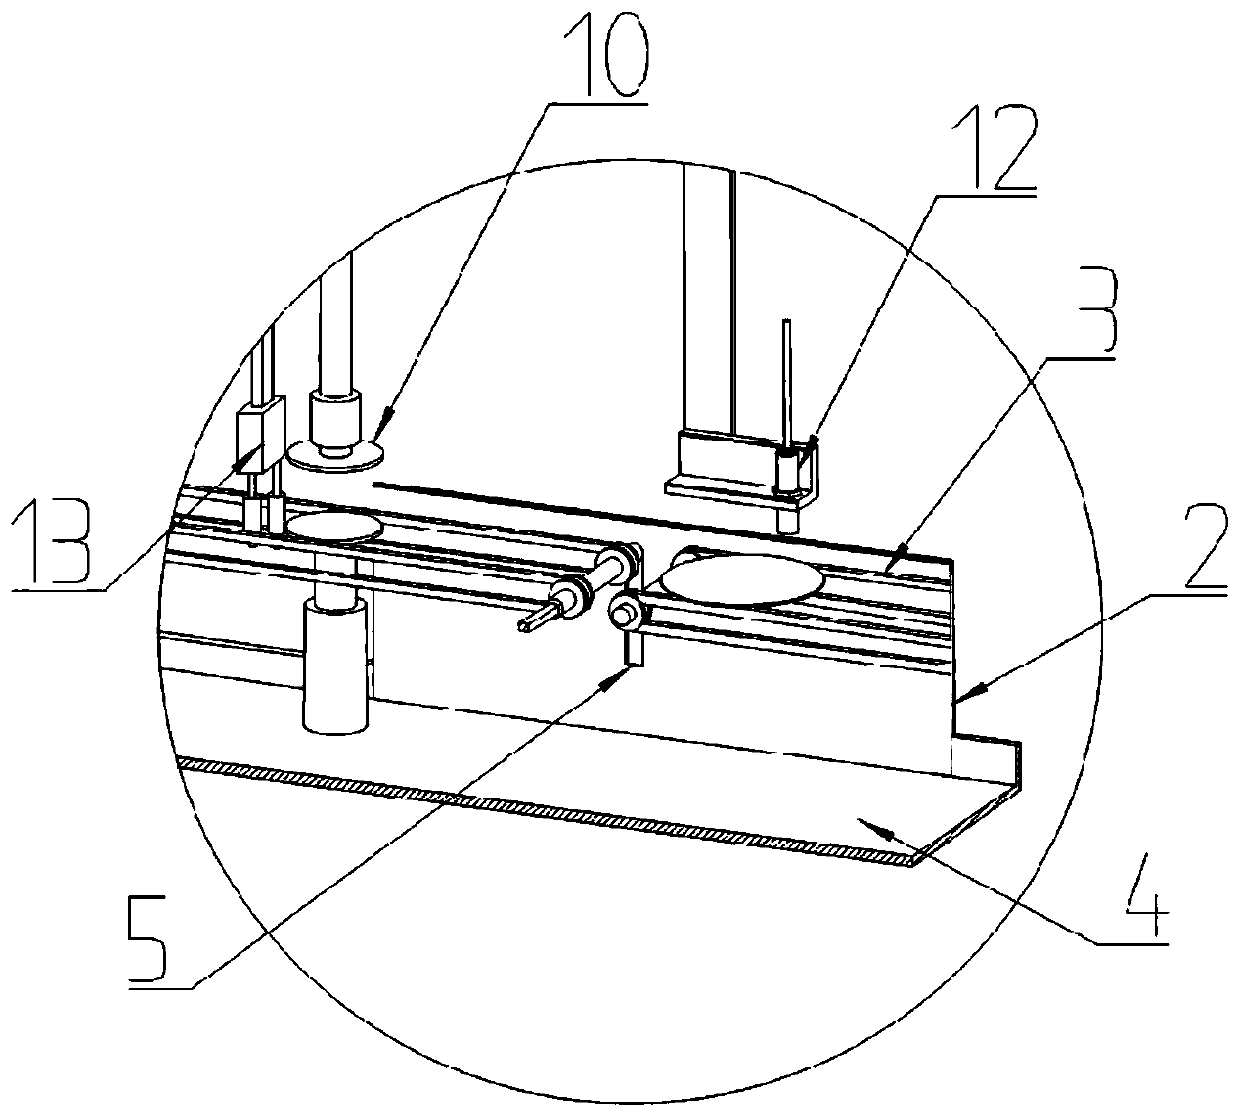 Circular glass polishing control system and method